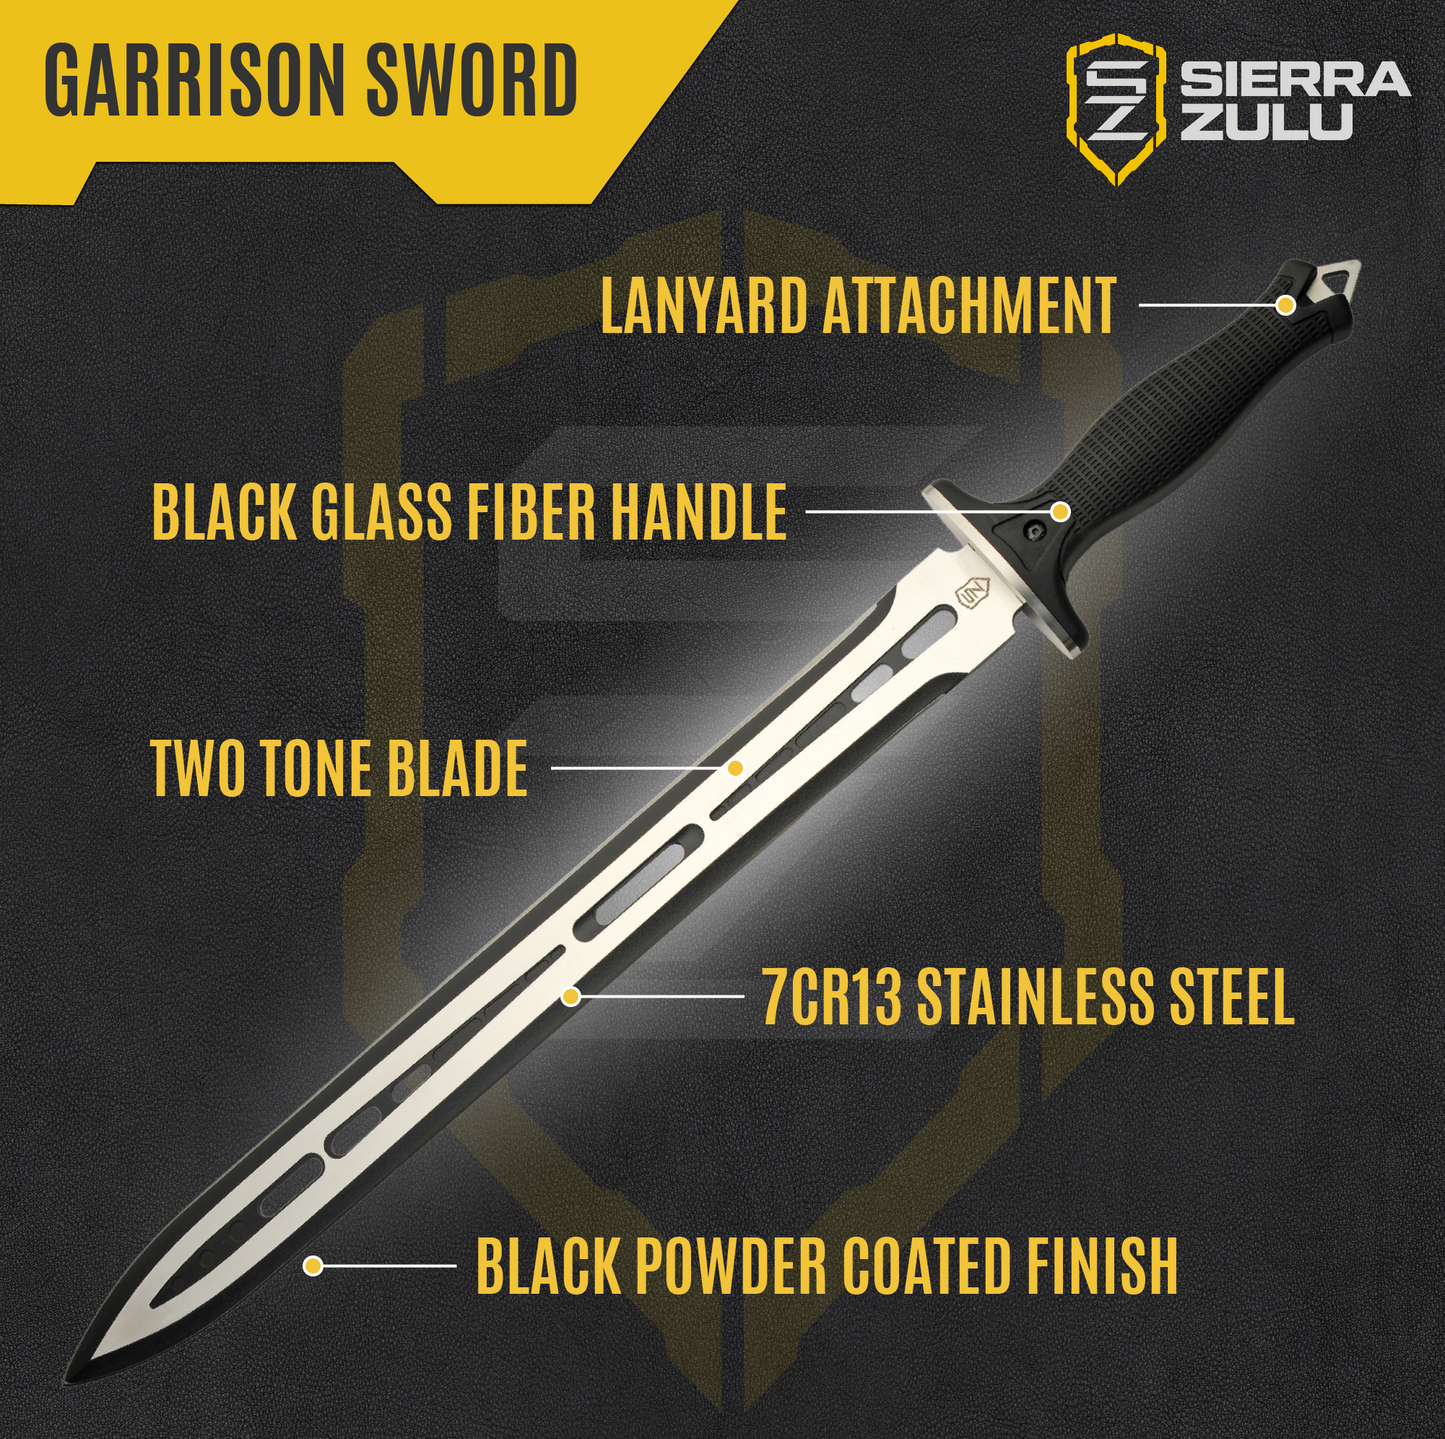 Sierra Zulu Garrison Sword